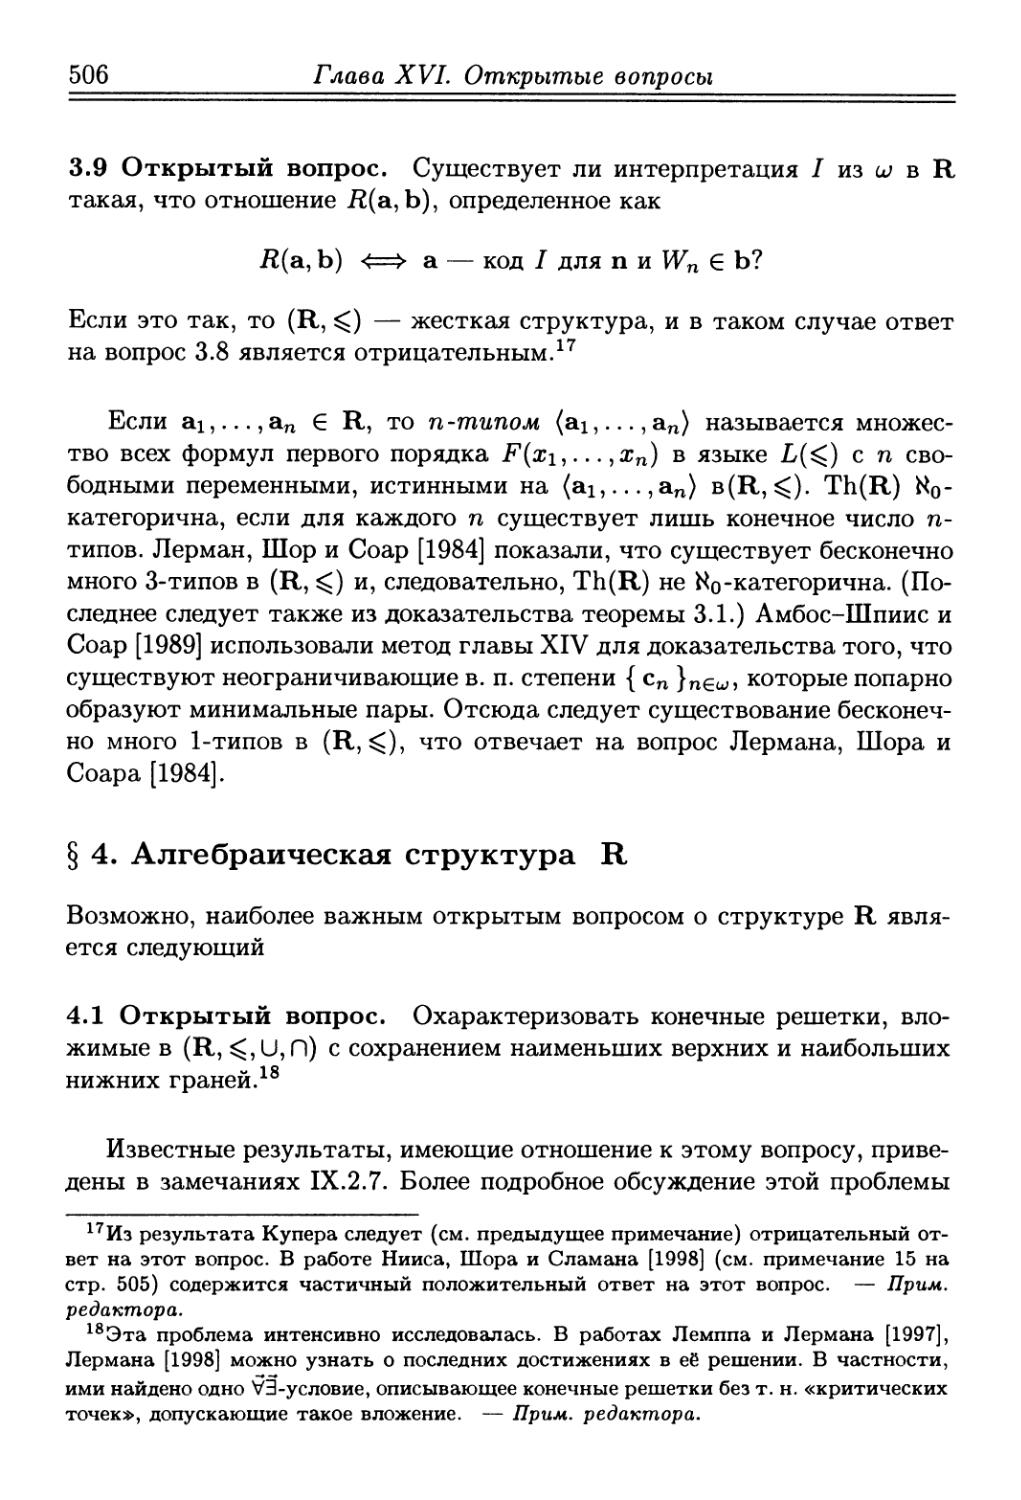 § 4. Алгебраическая структура R